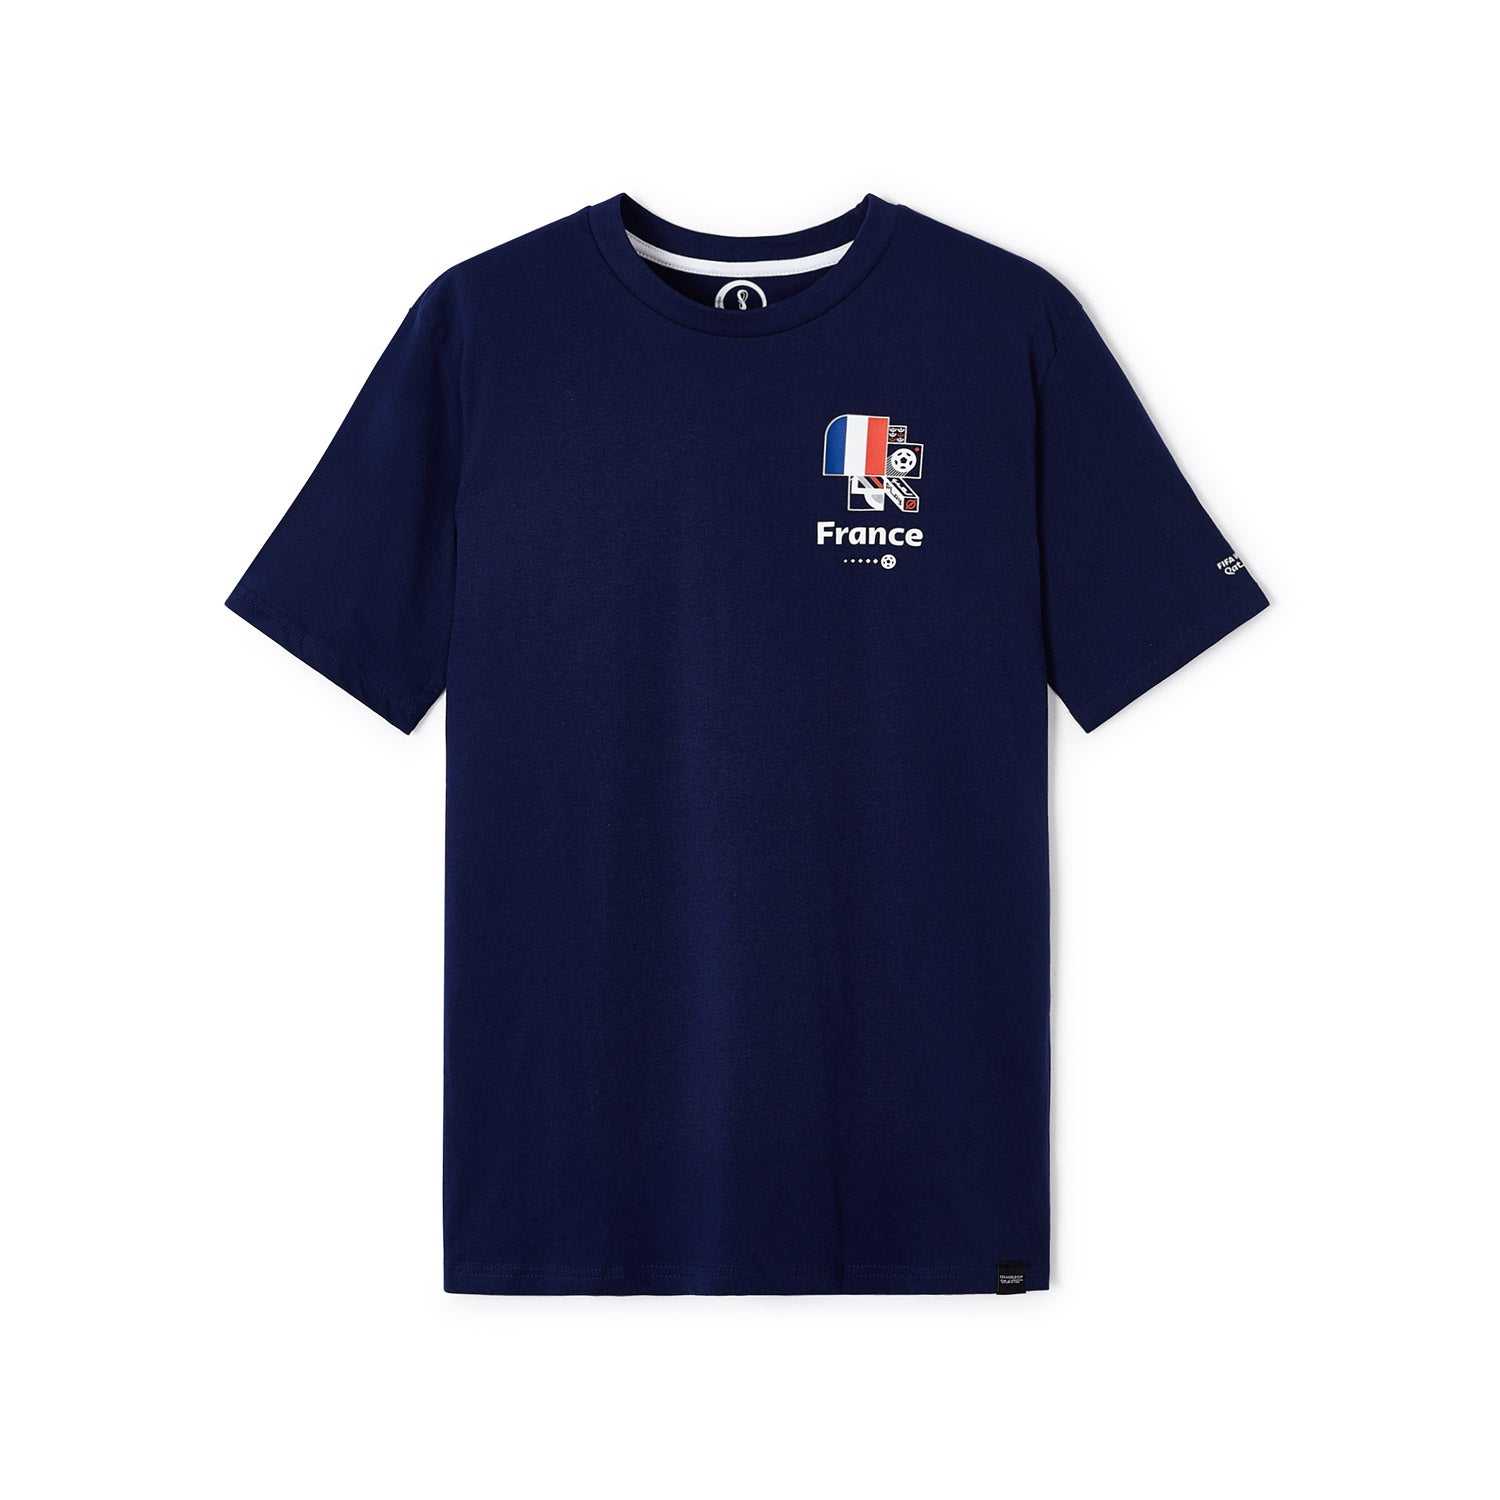 2022 World Cup France Dark Blue T-Shirt - Men's